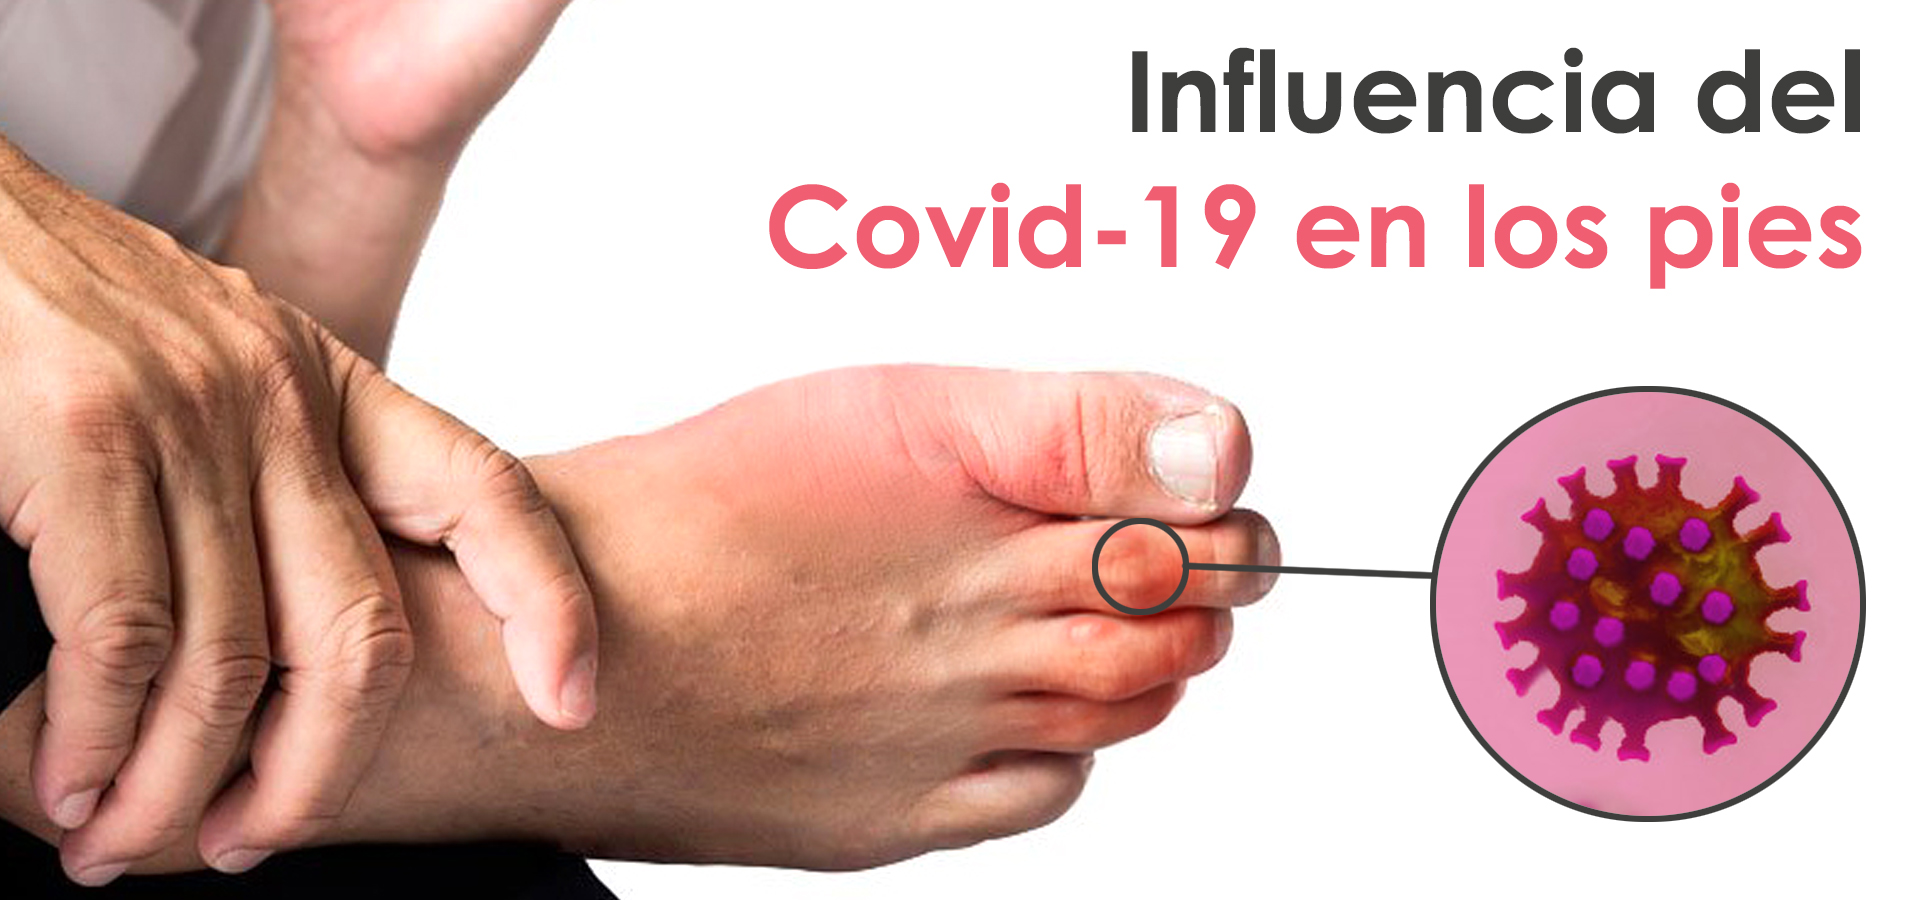 Influencia del Covid-19 en los pies